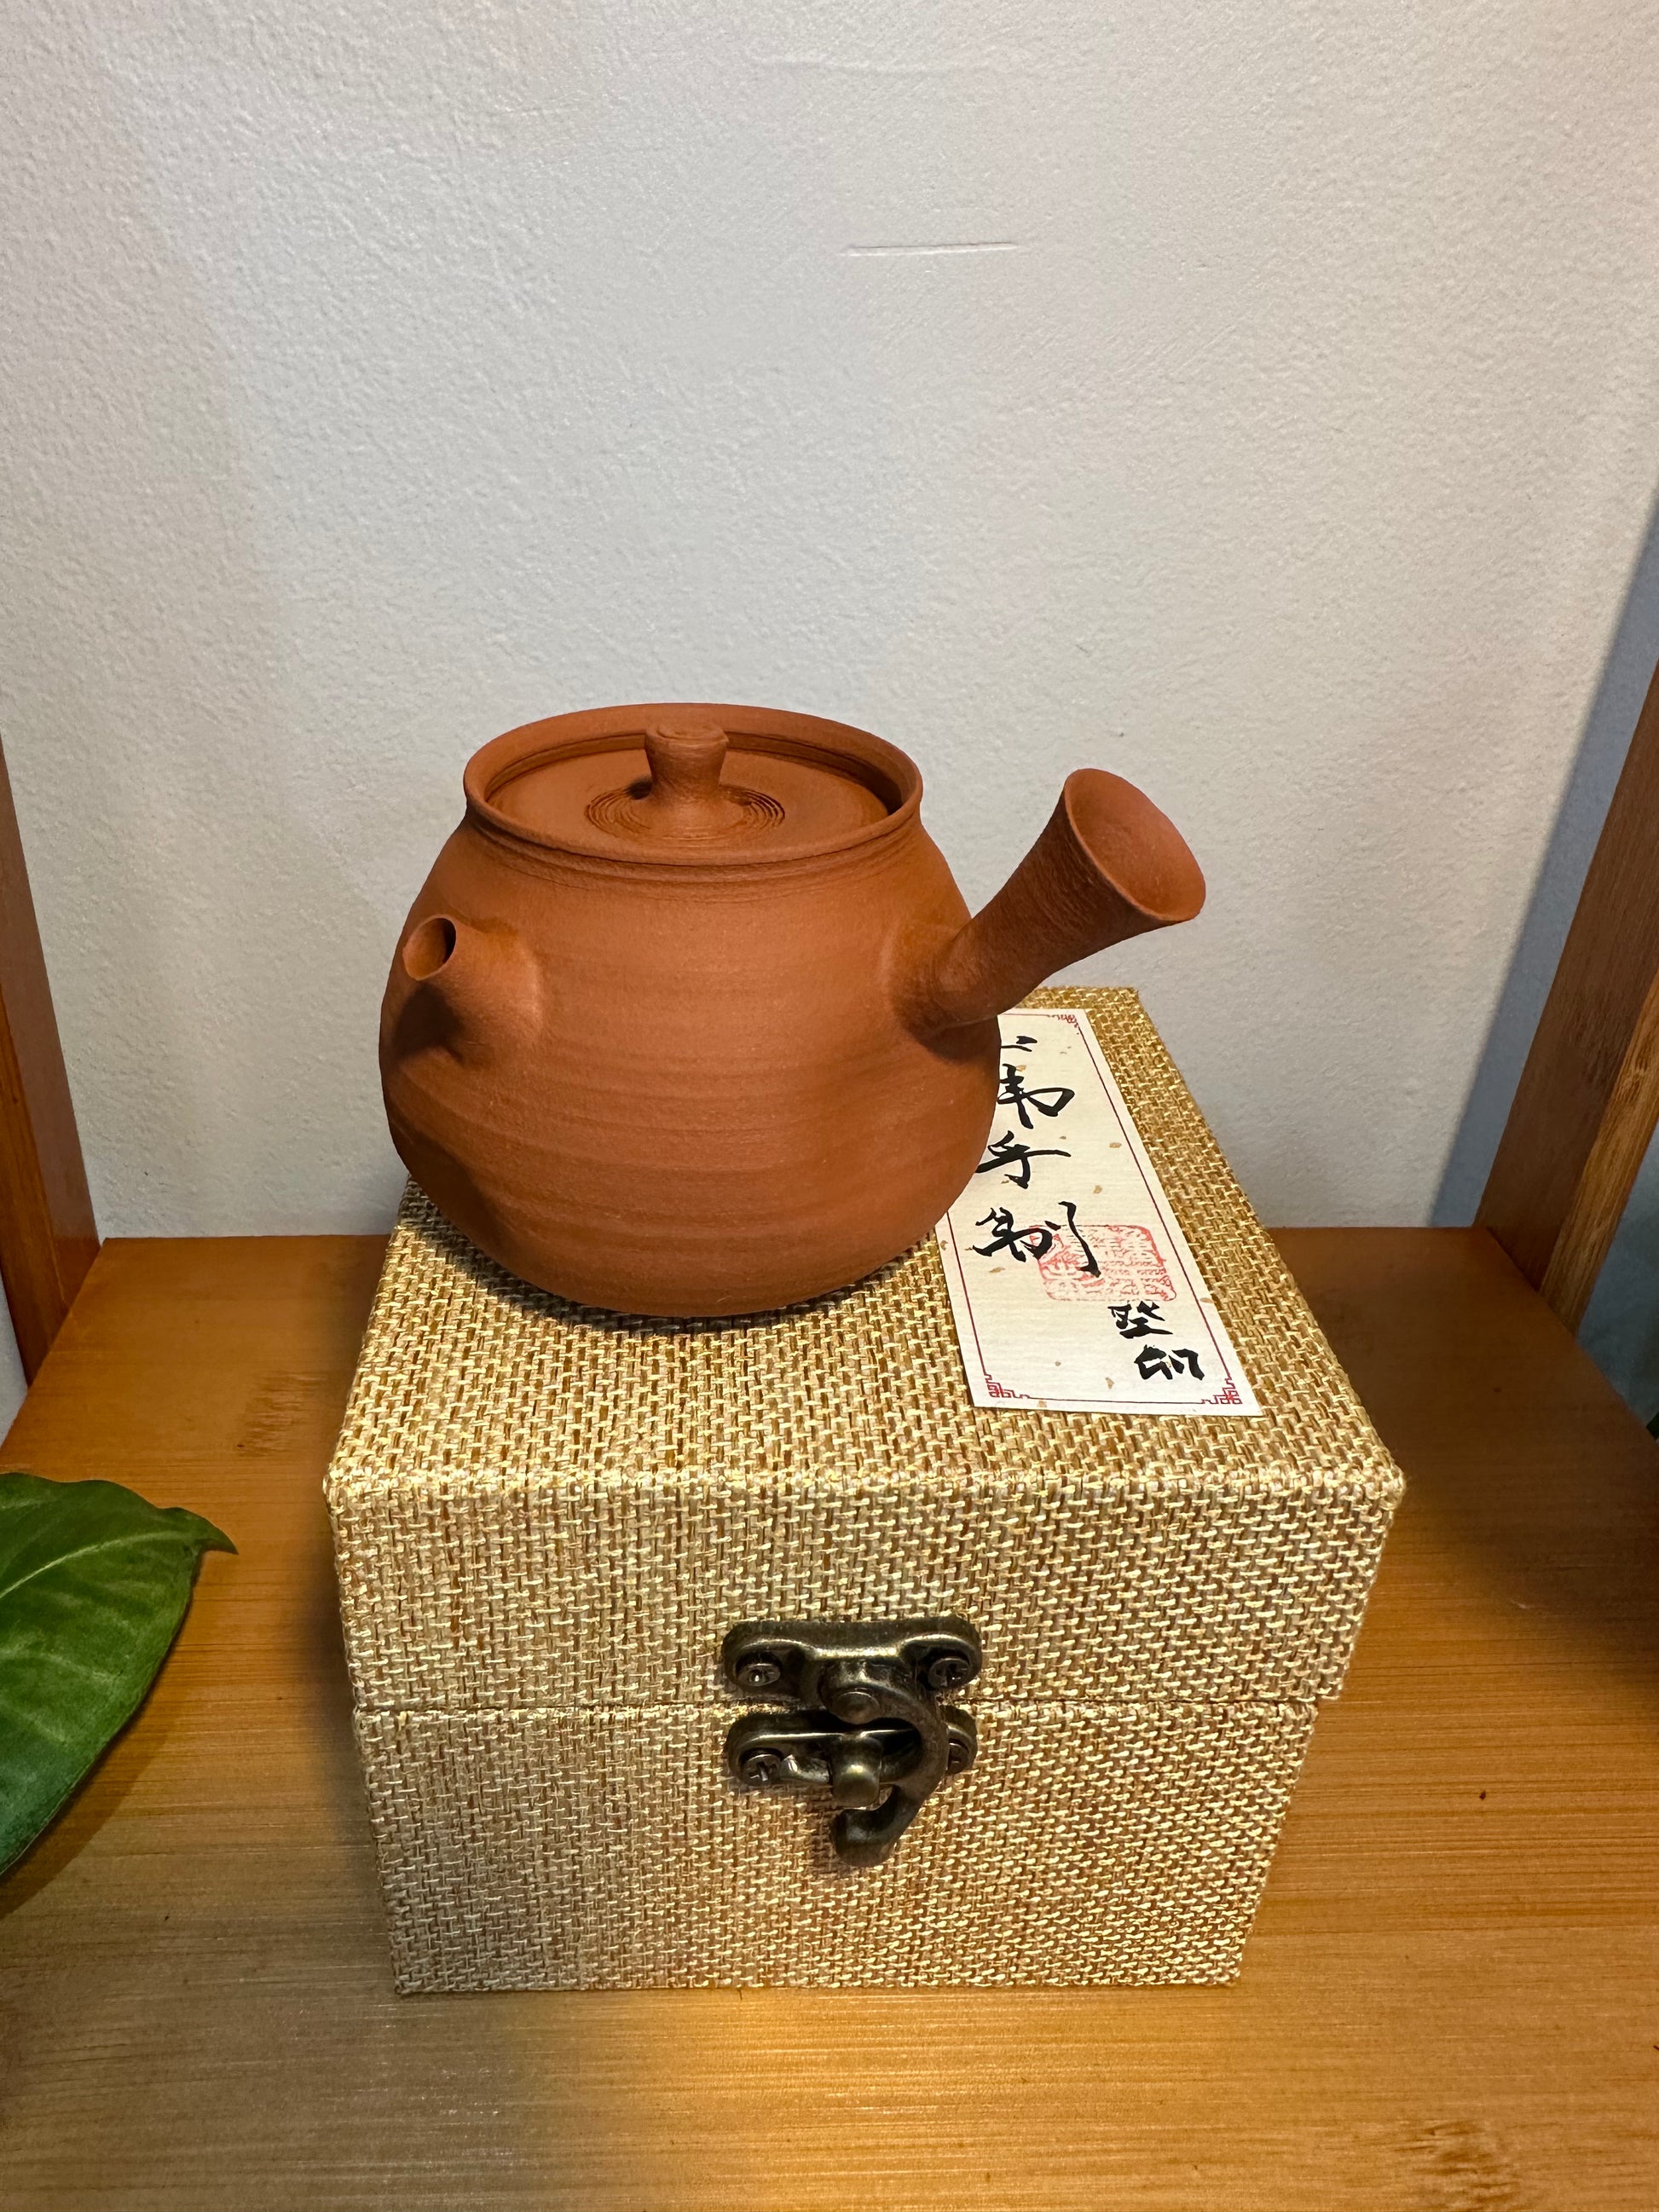 纯手工潮州手拉茶壶 钟玉鹏作品 Pure handmade Teochew teapot